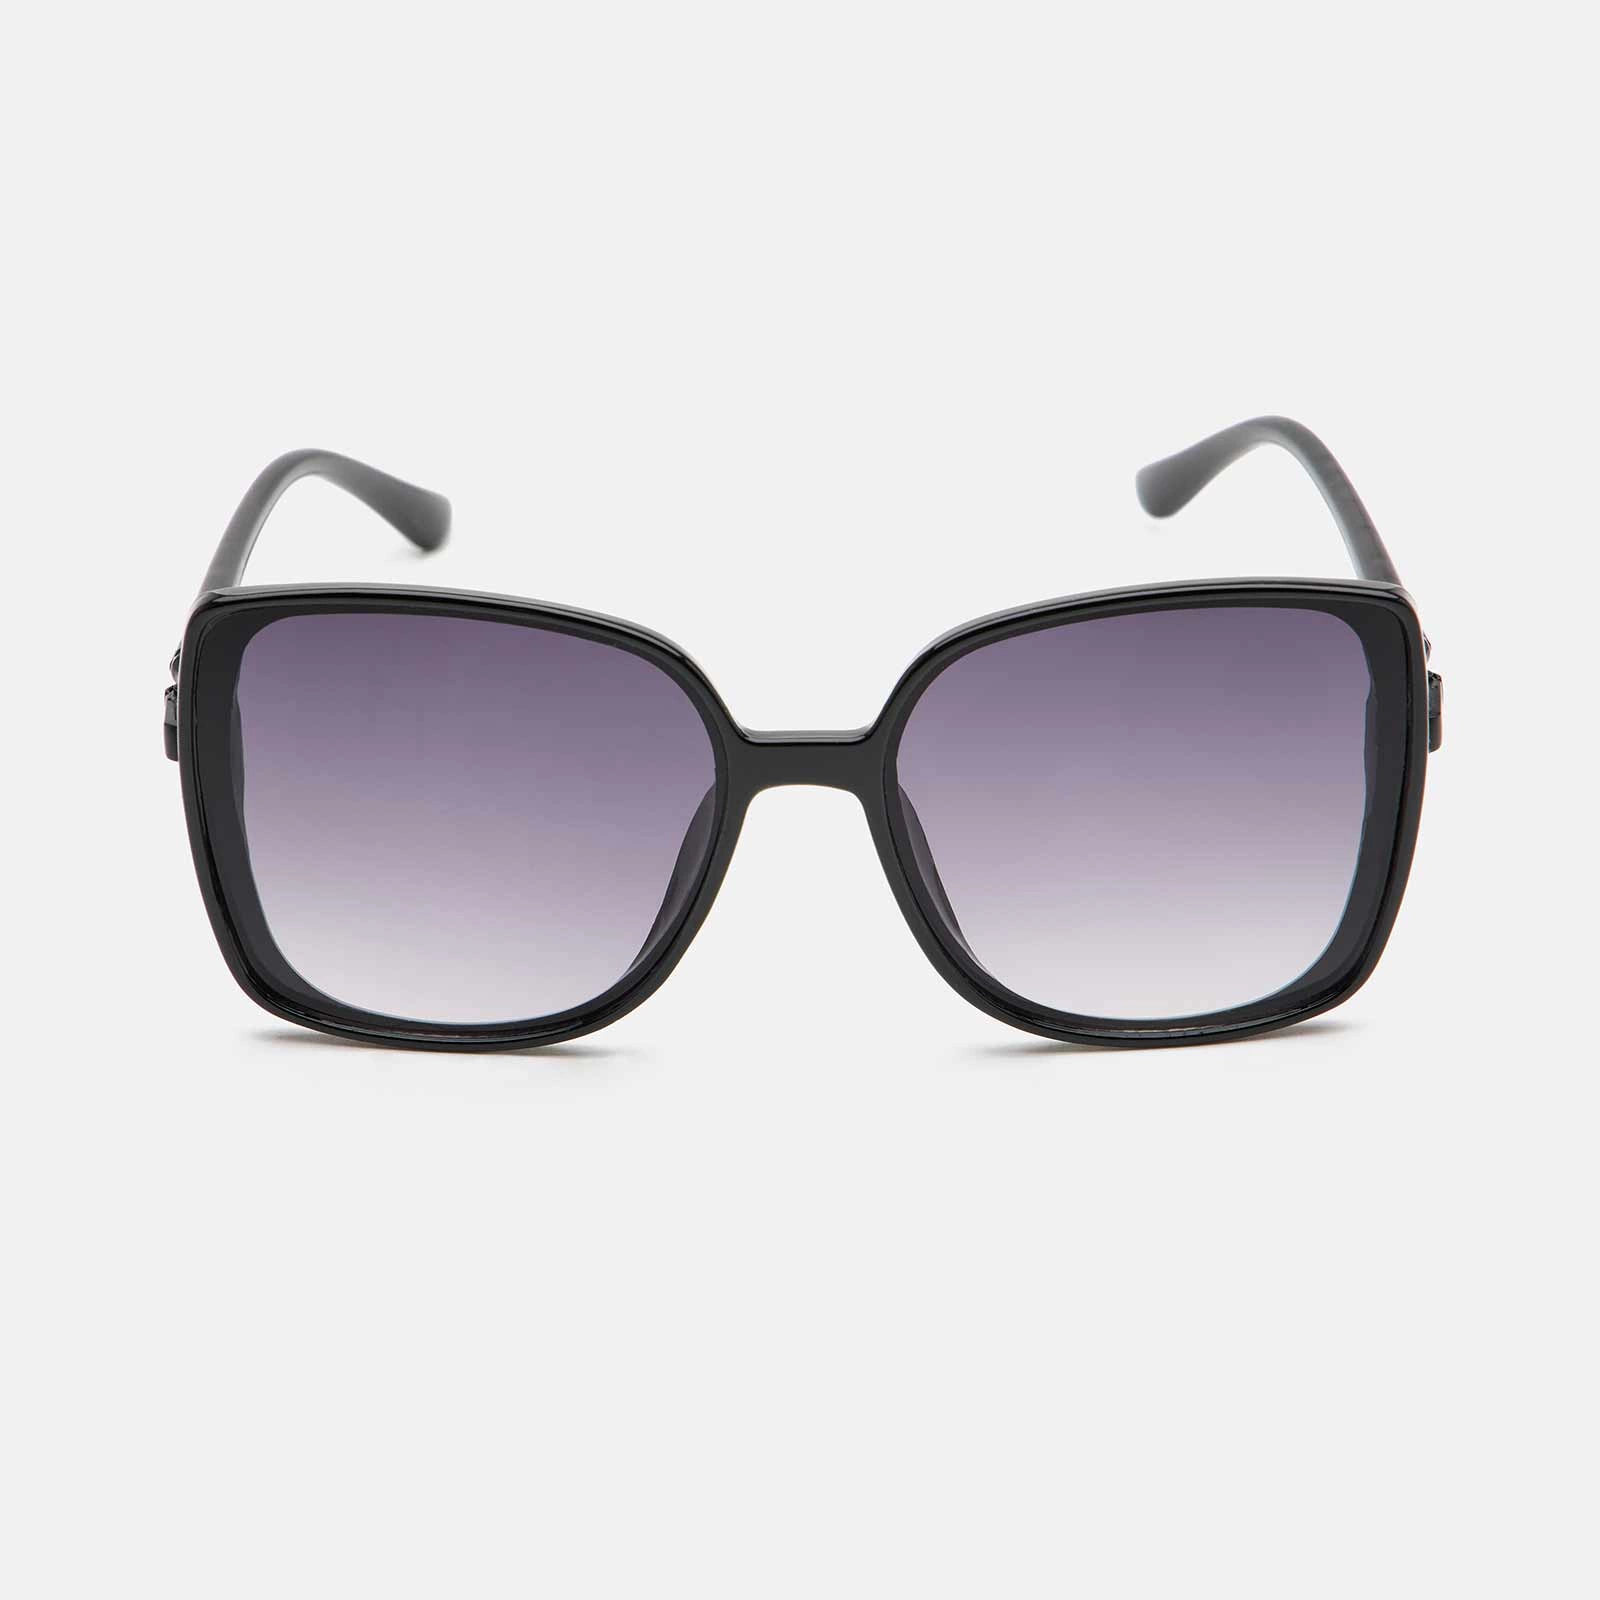 Solglasögon - svarta kantiga, retro